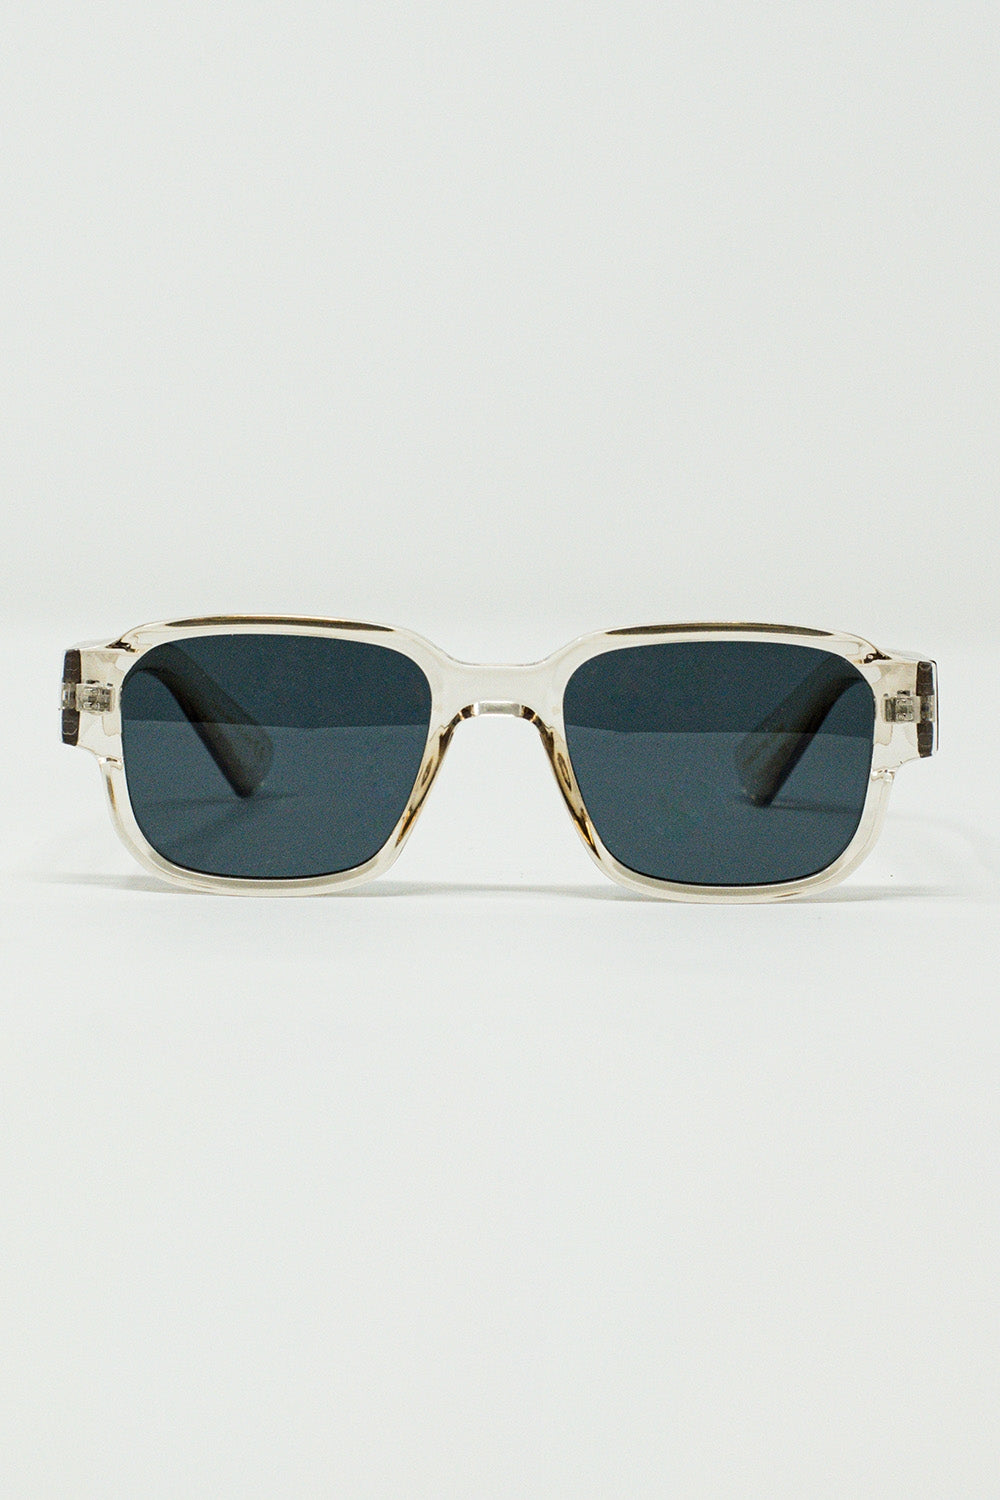 Q2 Chunky Square Sunglasses With Transparent Smoky Frame